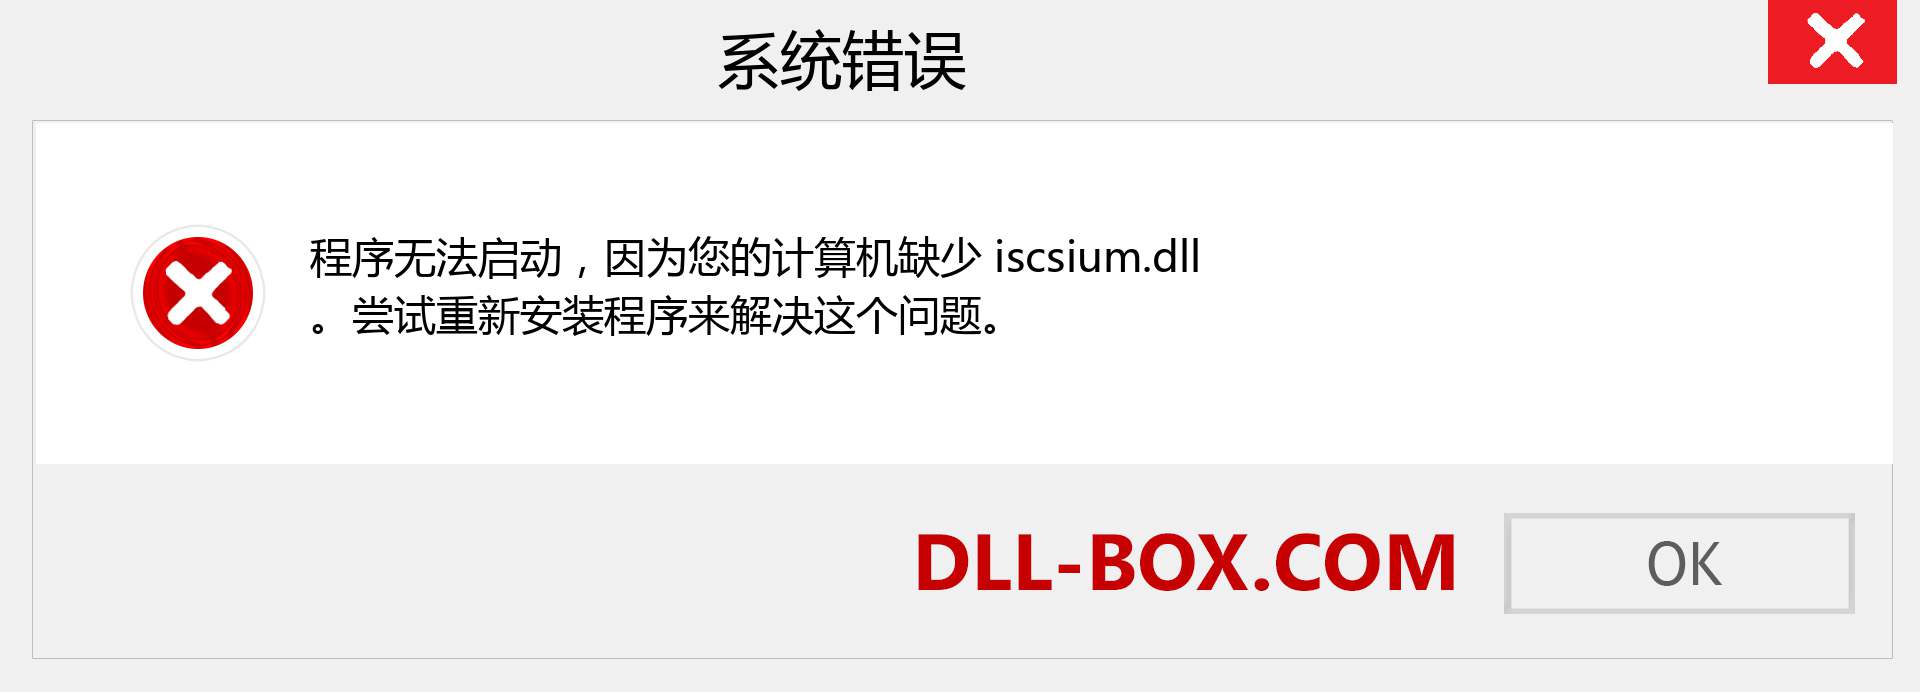 iscsium.dll 文件丢失？。 适用于 Windows 7、8、10 的下载 - 修复 Windows、照片、图像上的 iscsium dll 丢失错误